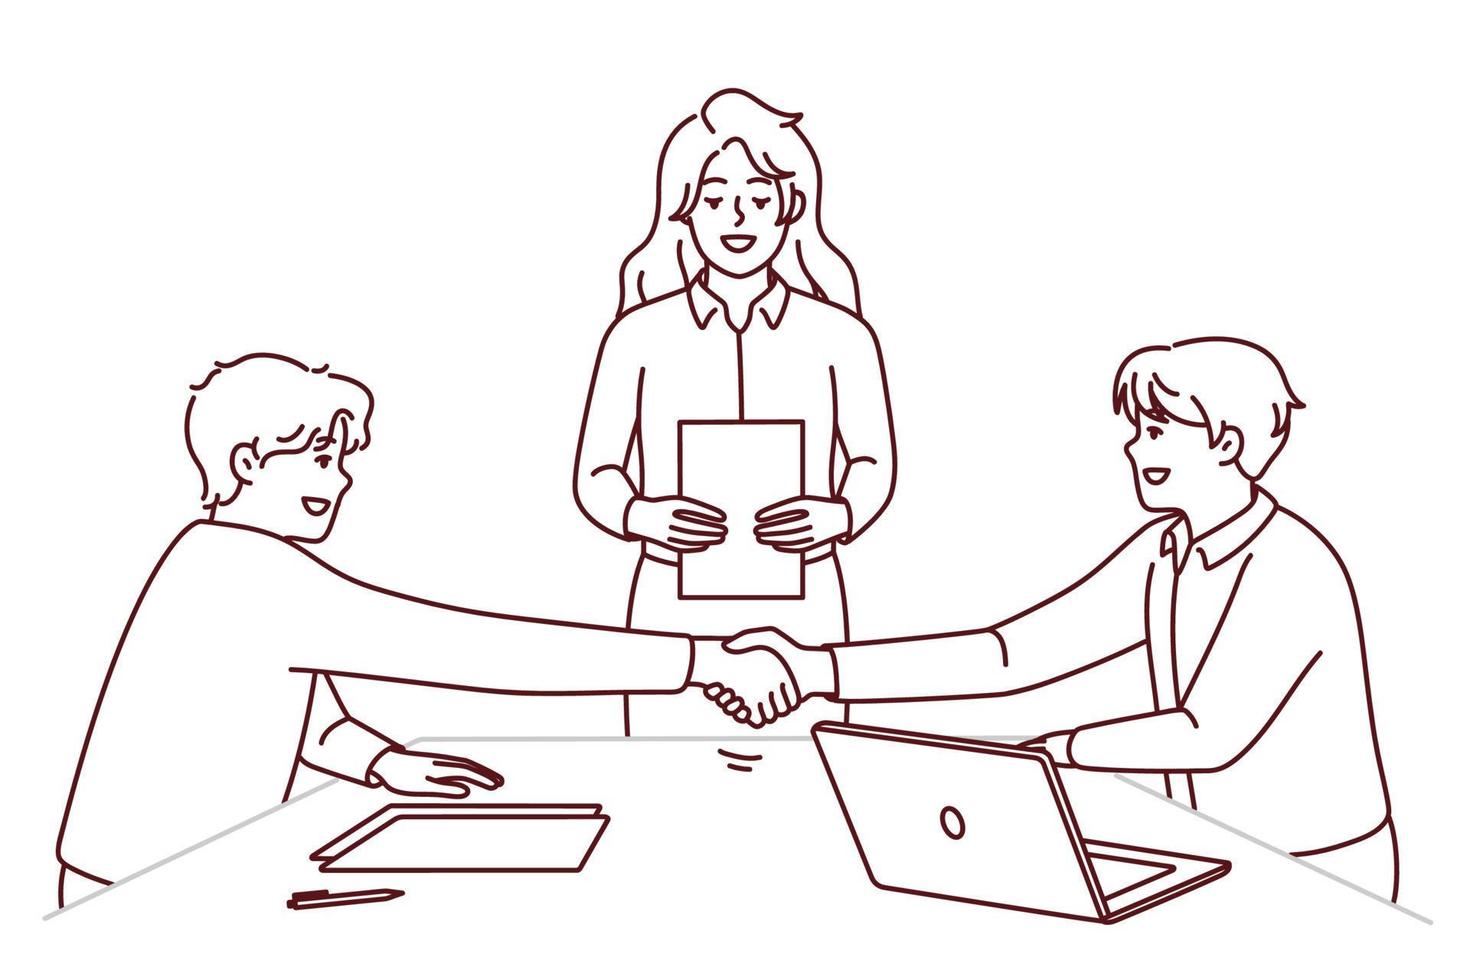 aperto de mão de pessoas fechar acordo na reunião do escritório. empresários sorridentes apertam as mãos fazem acordo no briefing. emprego e parceria. ilustração vetorial. vetor